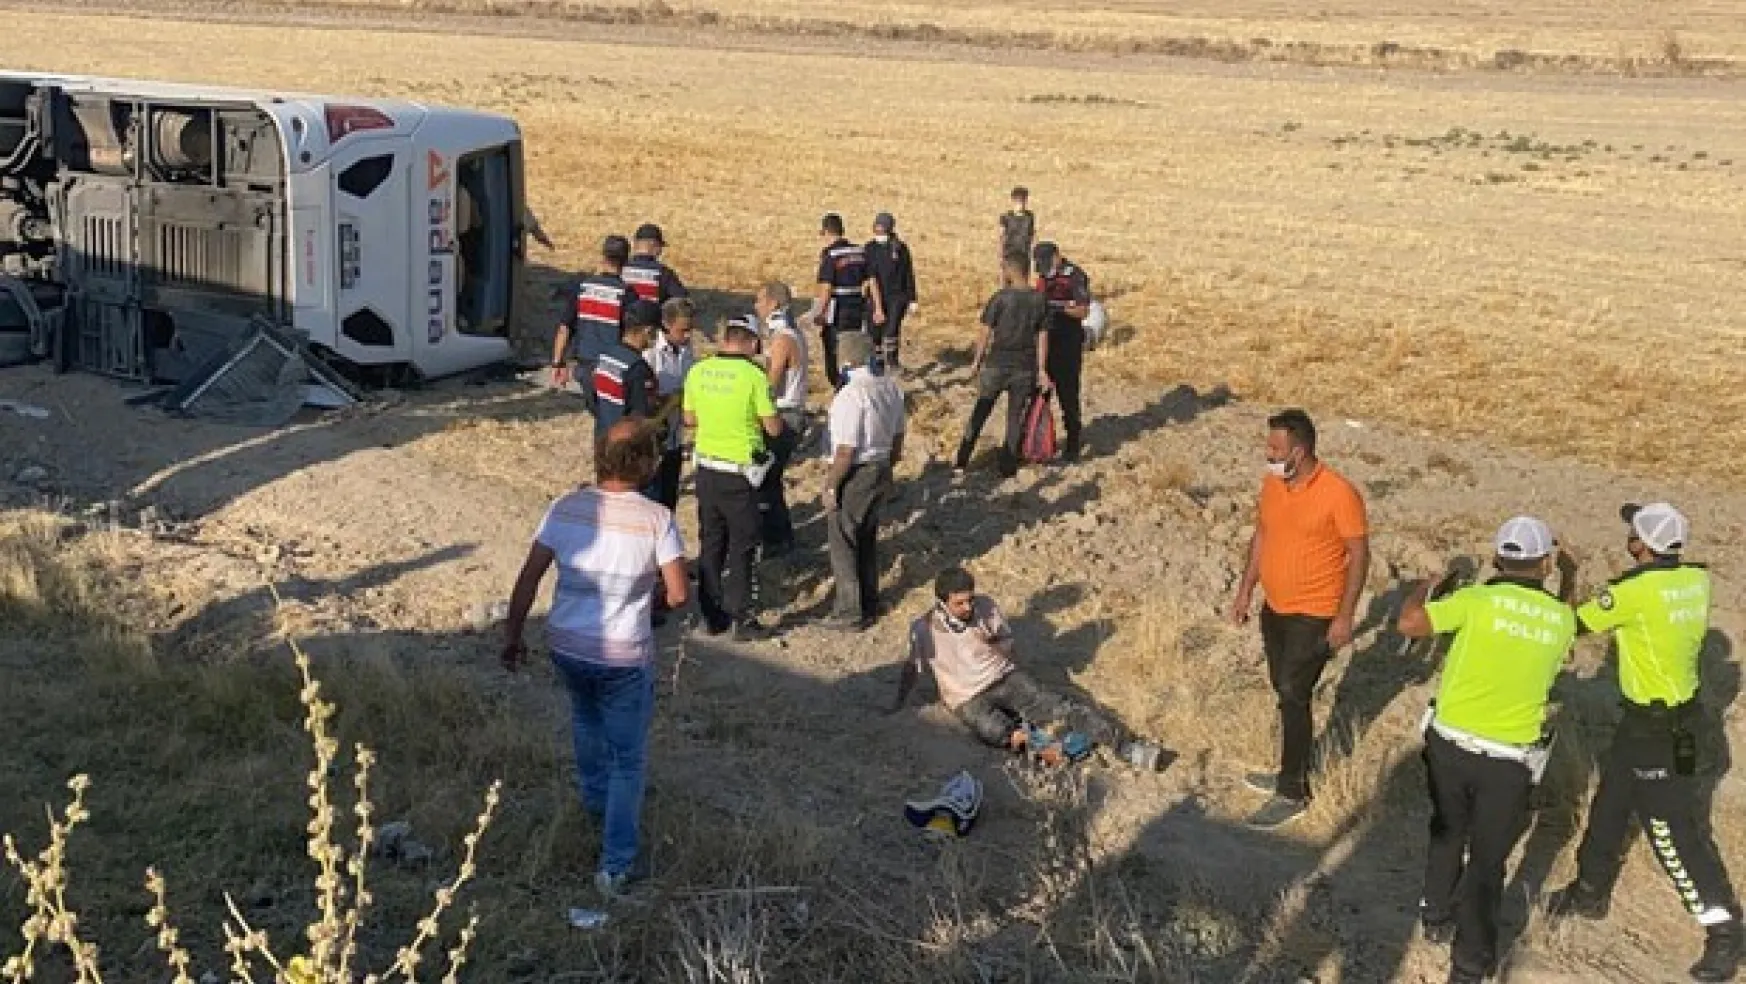 Aksaray'da yolcu otobüsü devrildi: 30 yaralı